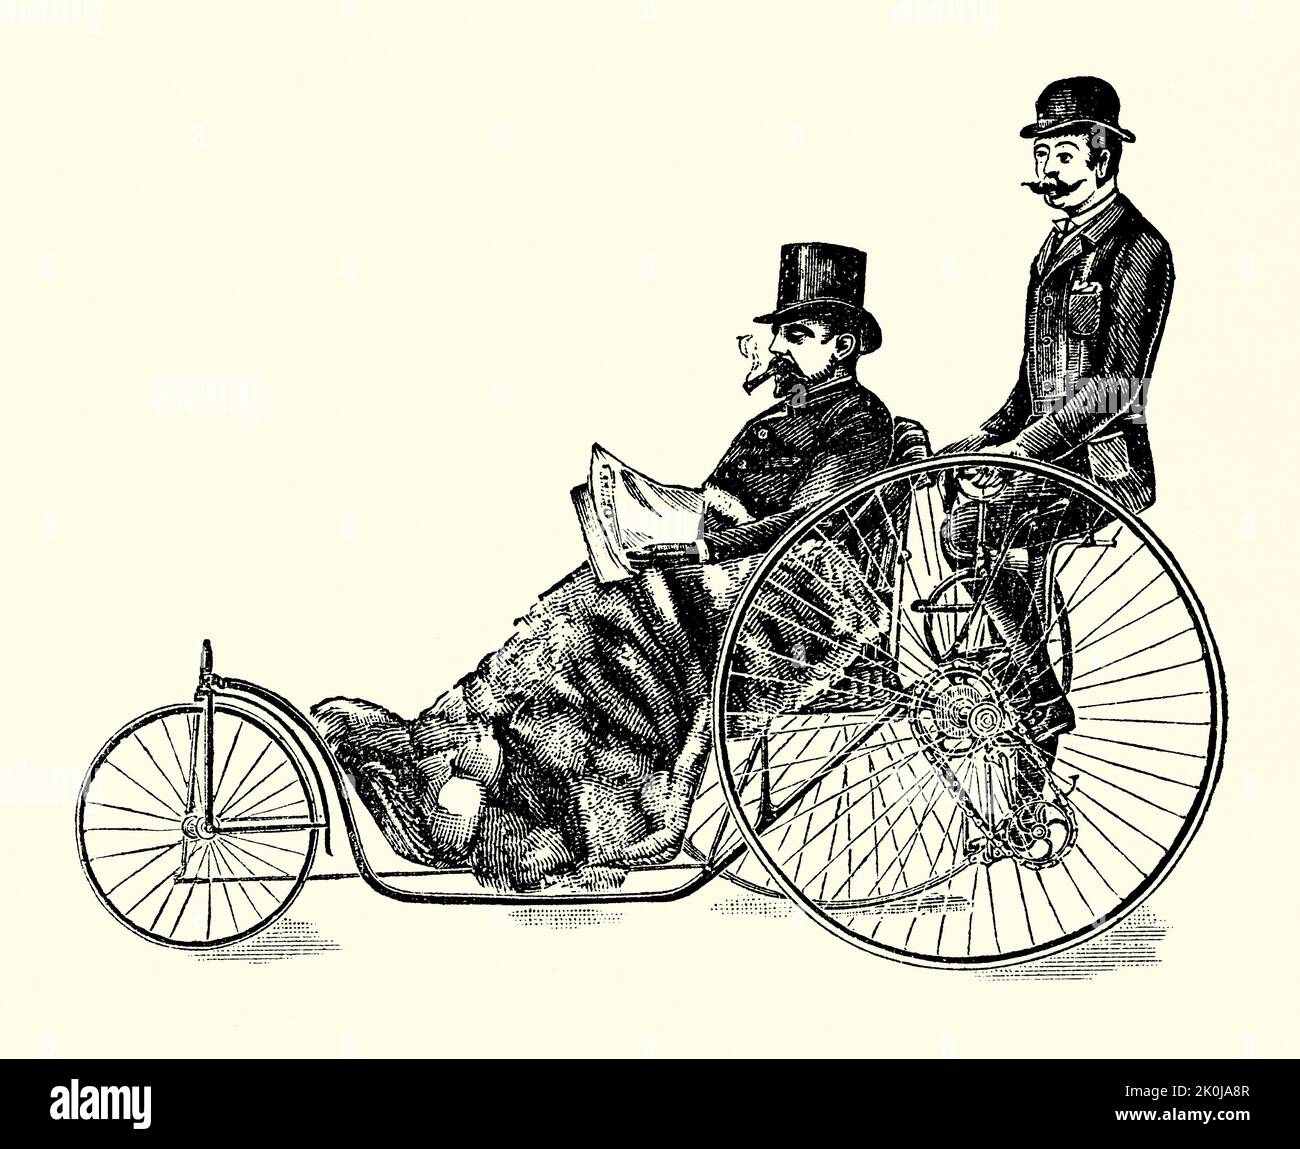 Un antiguo grabado victoriano de la “silla Coventry” de Starley. Es de un libro de 1890. Starley y Sutton Co de Meteor Works, Coventry, Warwickshire, West Midlands, Inglaterra, El Reino Unido fue uno de los primeros pioneros de las bicicletas. La empresa fue fundada en 1878 por John Kemp Starley y William Sutton y fabricó «sillas de baño», con la disposición de pedalear en la parte trasera (como en el caso de un triciclo), que se conocían como sillas de Coventry. El diseño de su bicicleta «rover» suele ser reconocido como la primera «bicicleta moderna». Foto de stock